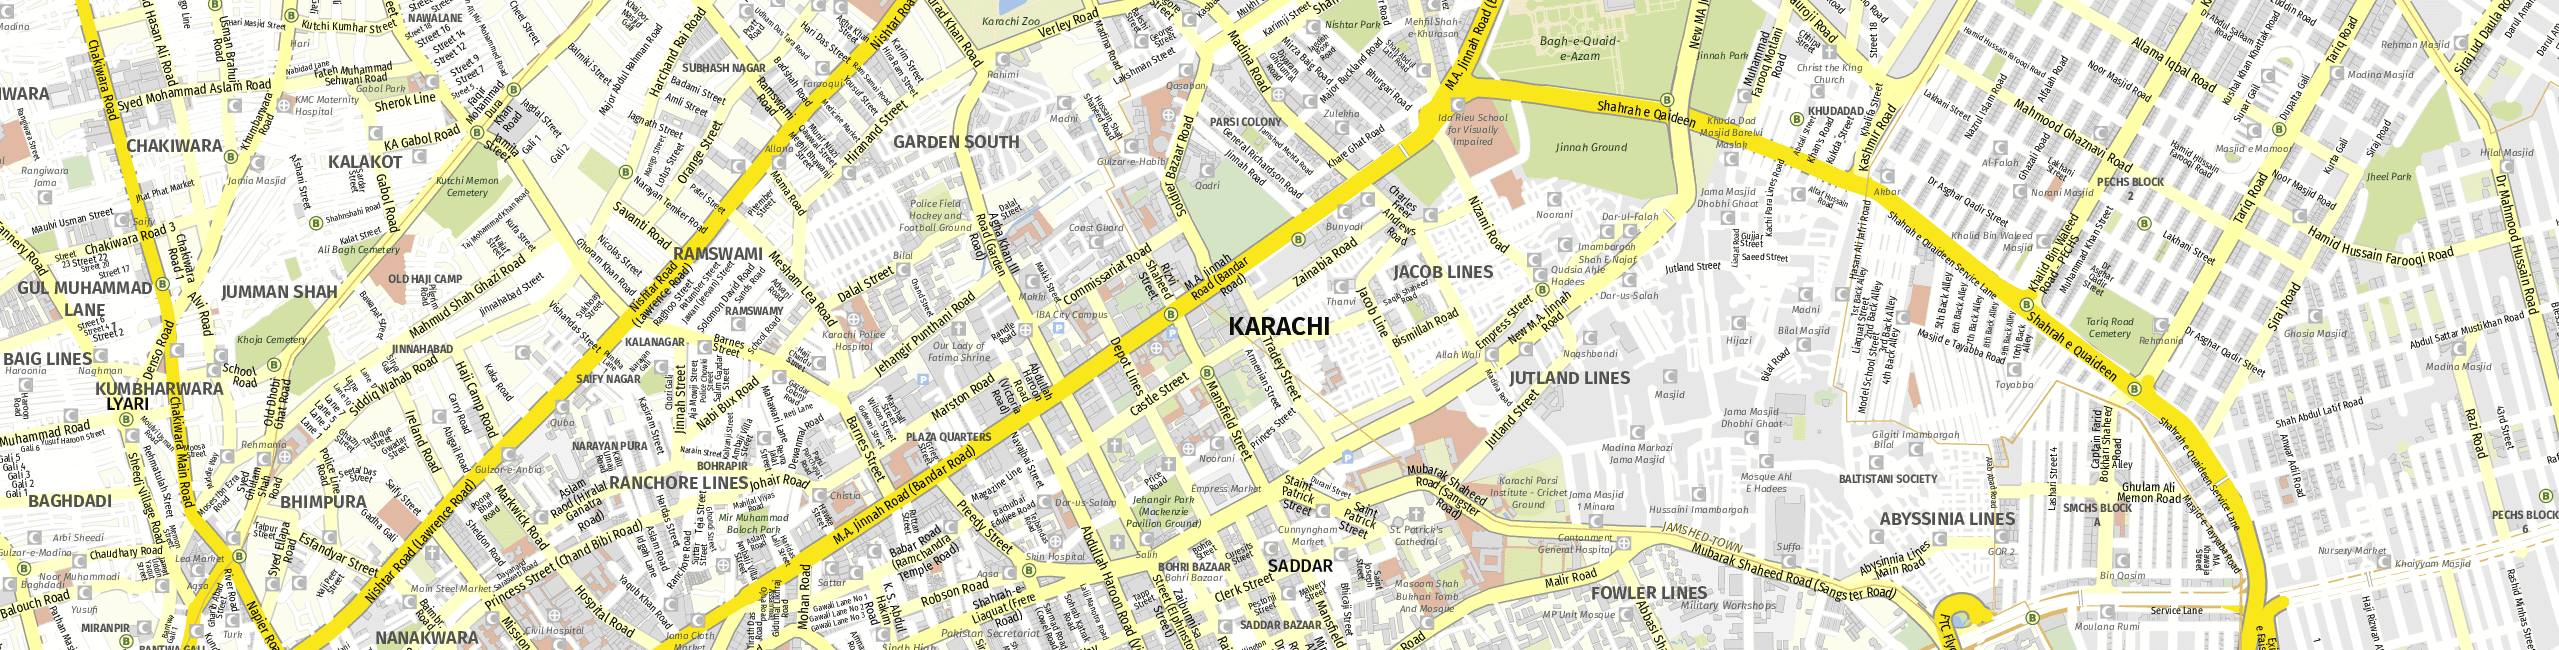 Stadtplan Karachi zum Downloaden.